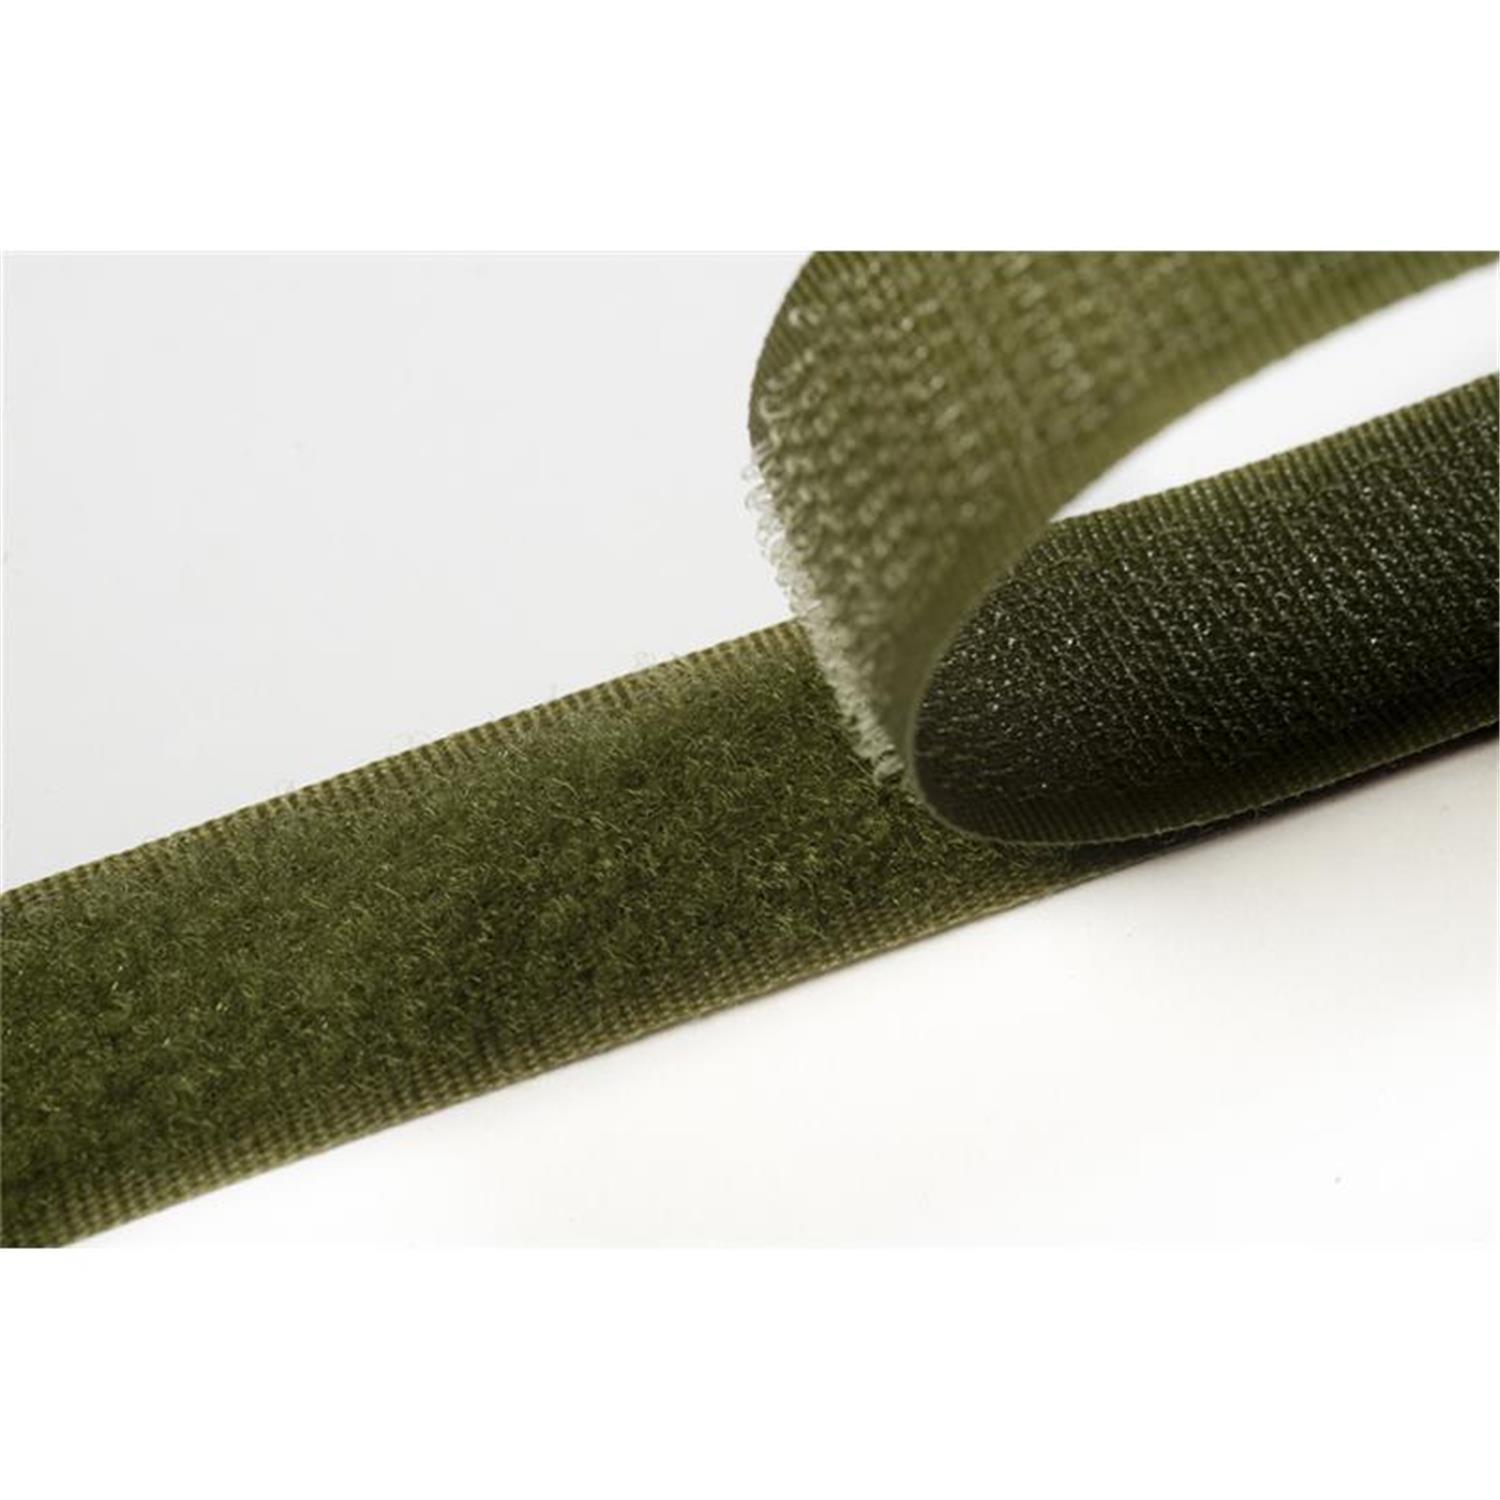 Klettband zum aufnähen, 50 mm, olivgrün #09 4 Meter